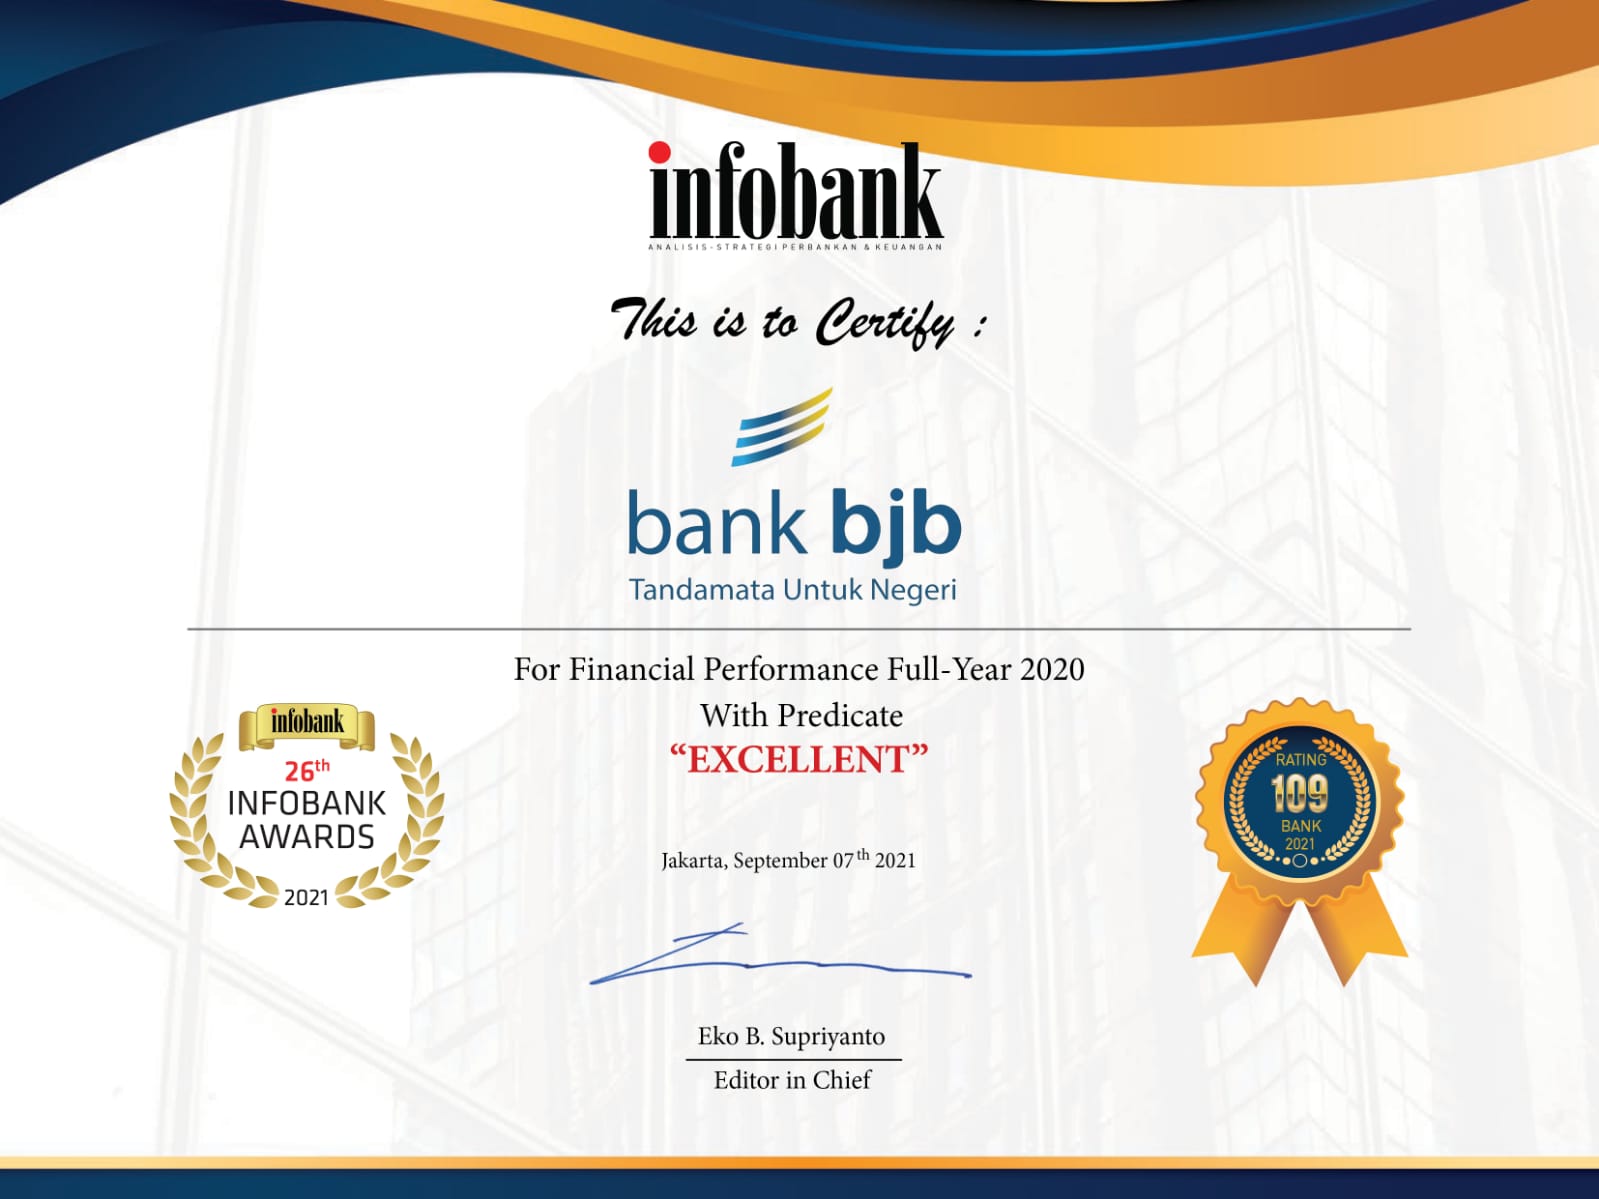  Direktur Utama dan bank bjb Raih Penghargaan Prestisius dari Infobank Award 2021